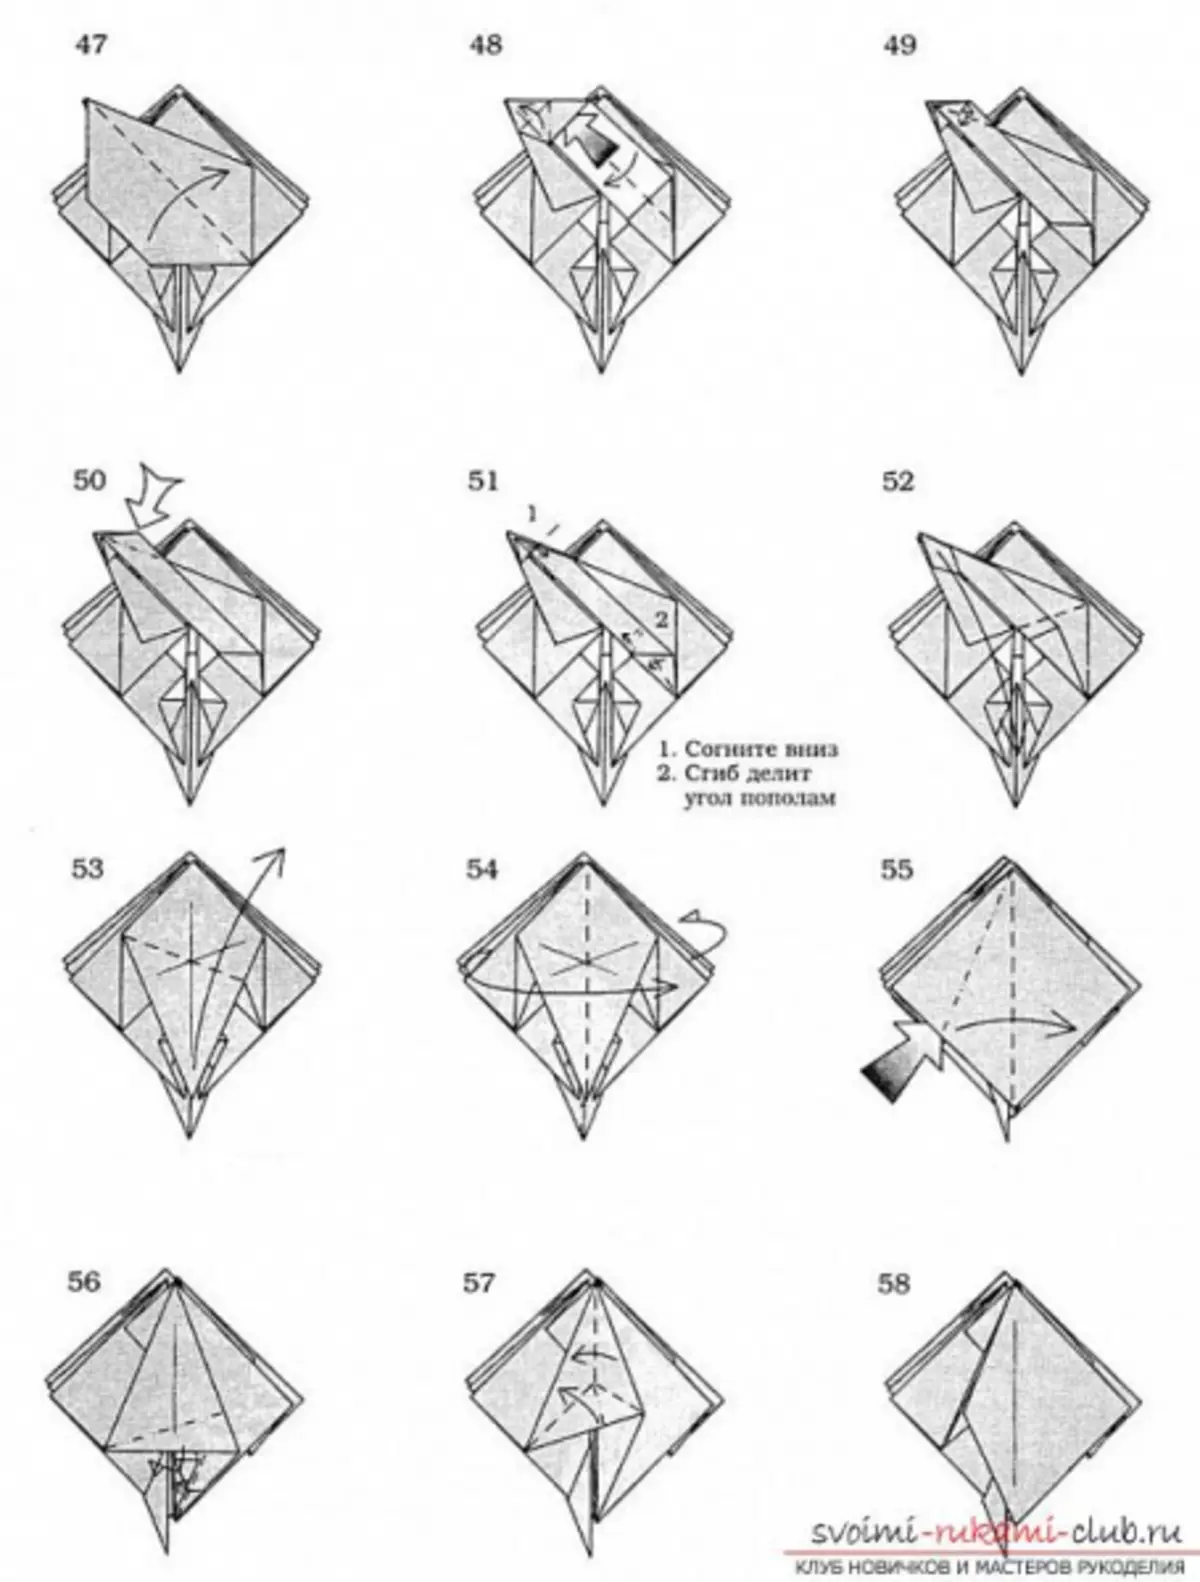 စက္ကူမှ origami နဂါး - အစီအစဉ်နှင့်ဗွီဒီယိုများနှင့်အစပြုသူများအတွက်မည်သို့ပြုလုပ်ရမည်နည်း